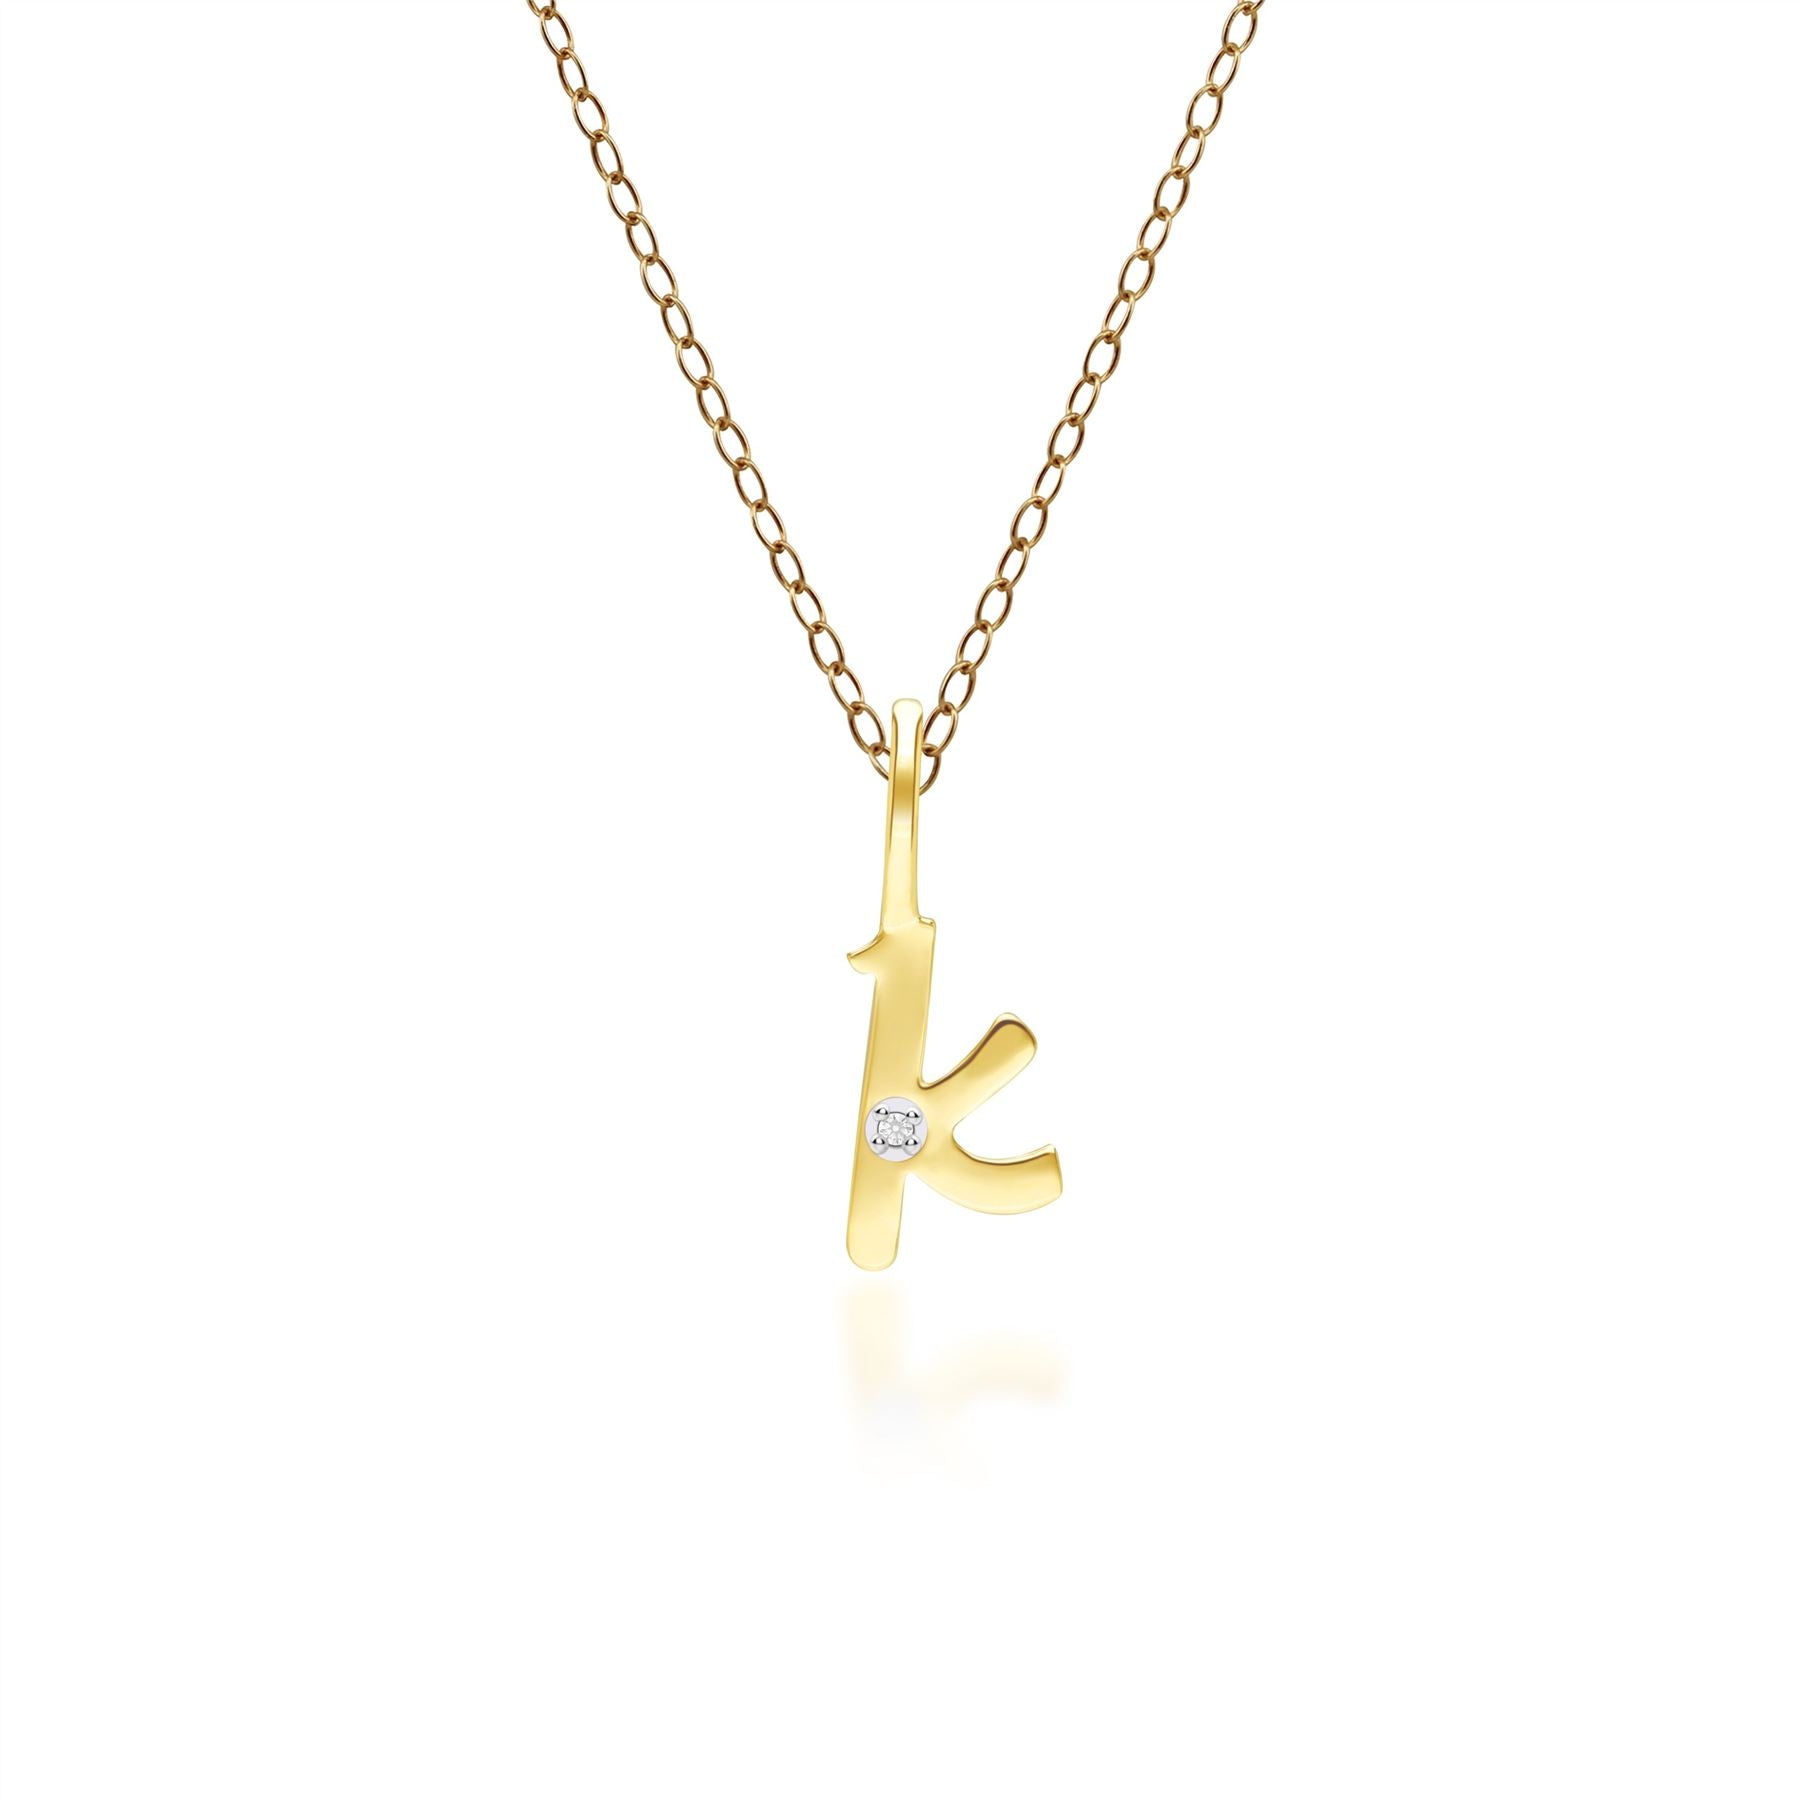 Ciondolo collana diamanti con lettera K dell'alfabeto in oro giallo da 9 carati